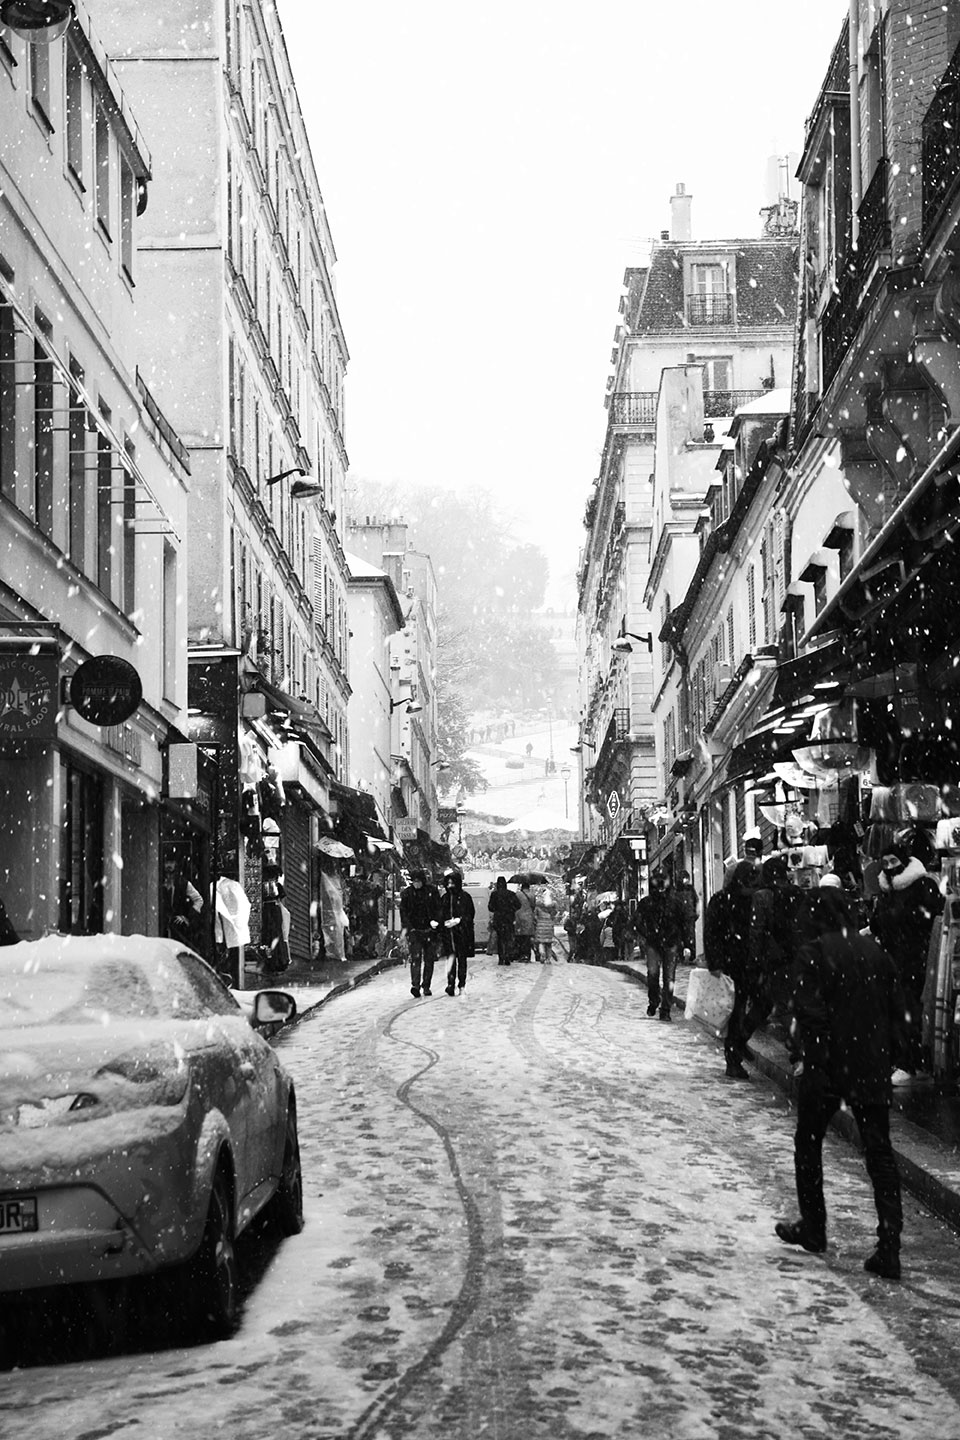 Paris under snowfall, rue de Steinkerque, Montmartre district, Paris, France 2021 (Nos Dren).